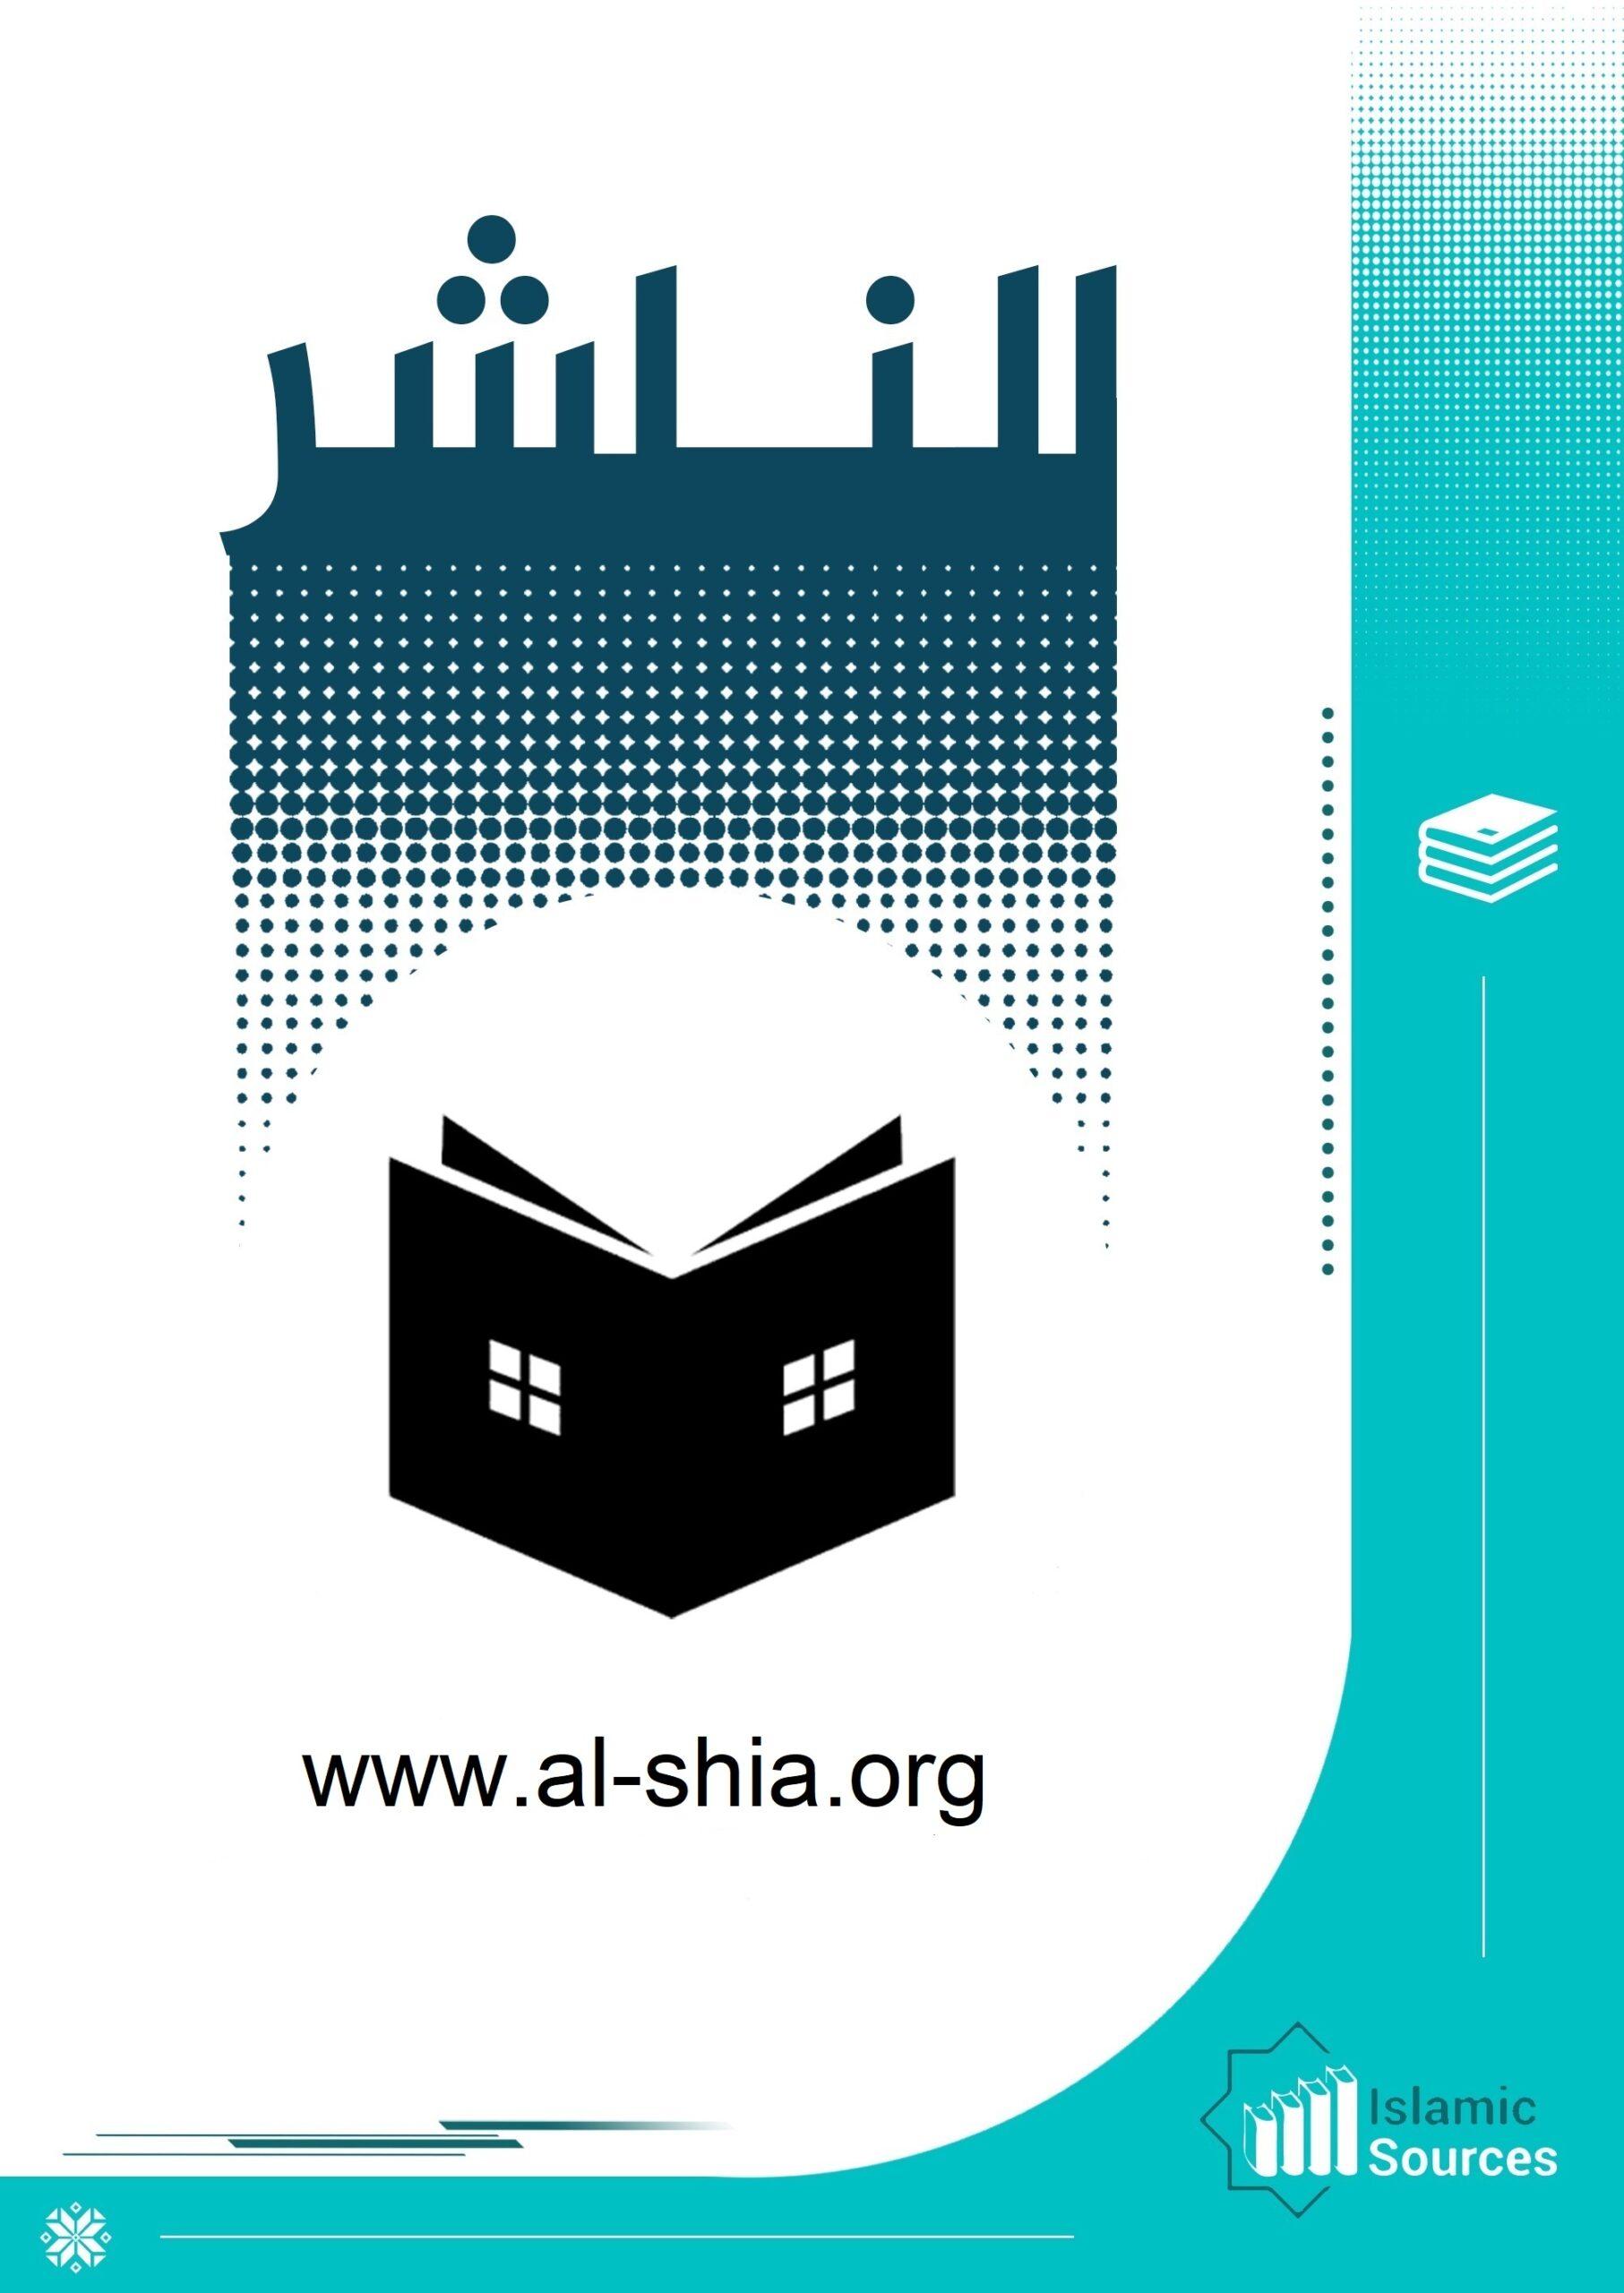 www.al-shia.org